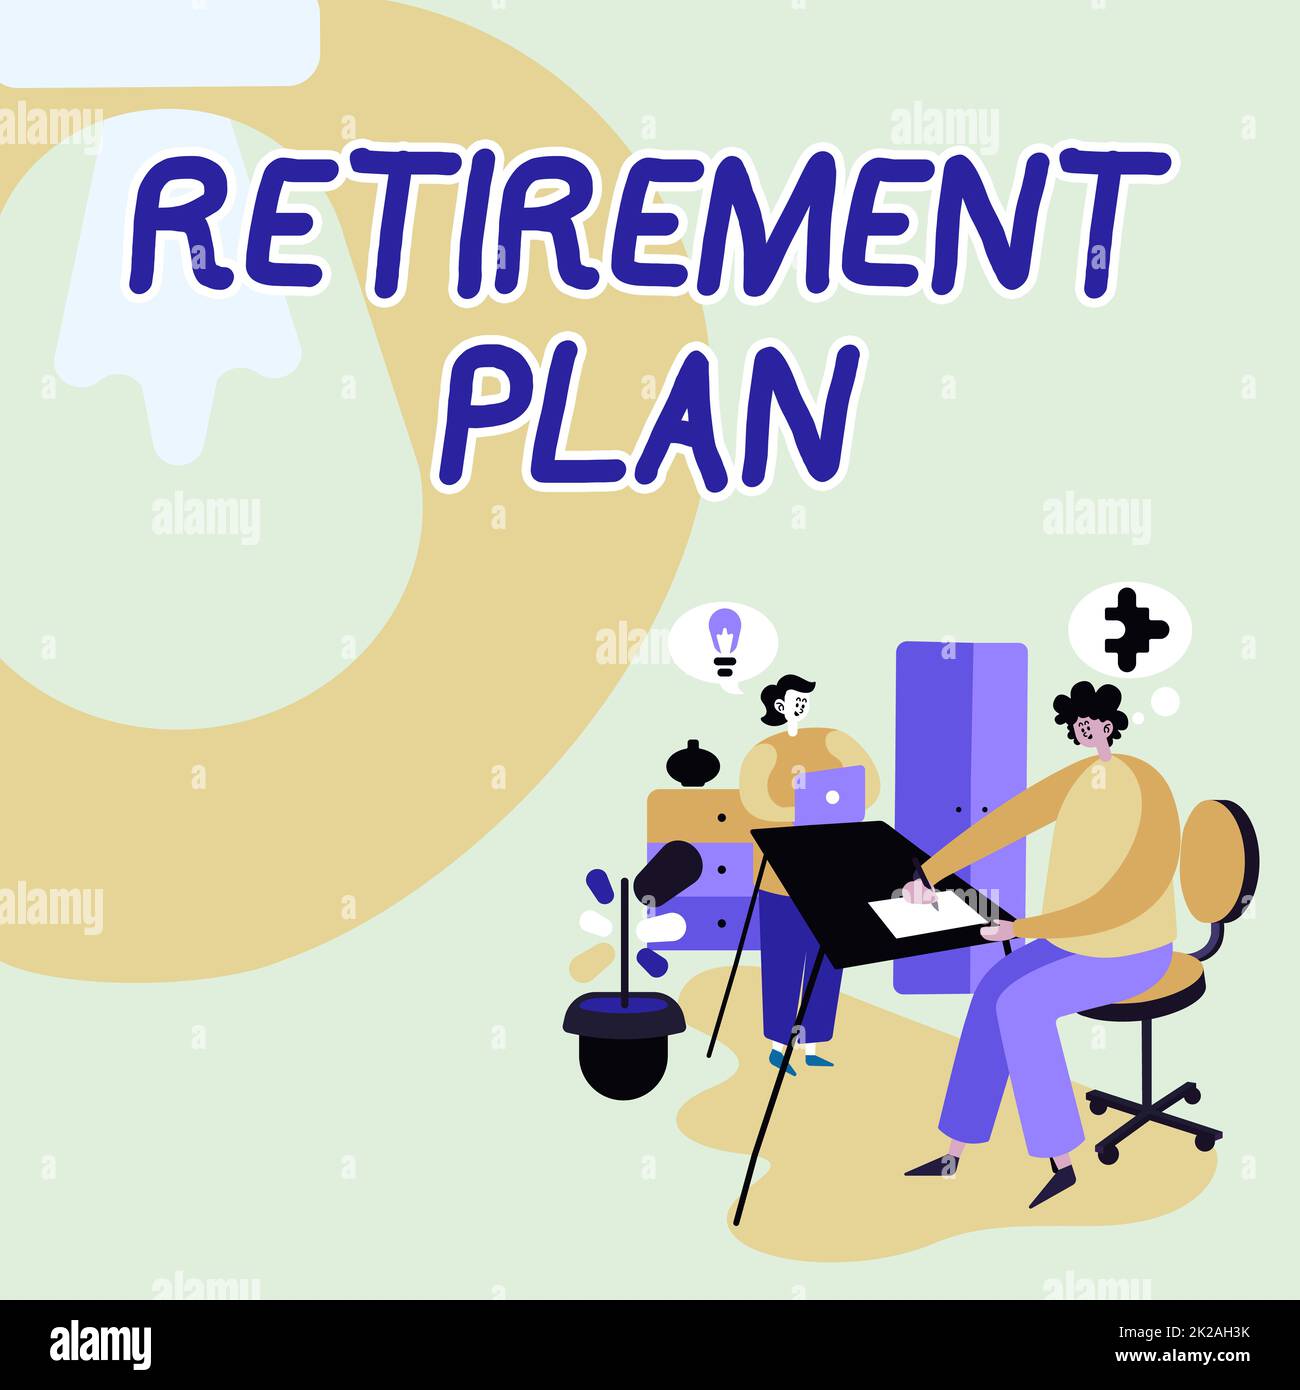 Textschild mit Ruhestandsplan, Konzept bedeutet Plan für die Einstellung von Geld, das nach dem Ruhestand ausgegeben werden soll Partner Austausch neuer Ideen für Skill Impr Stockfoto